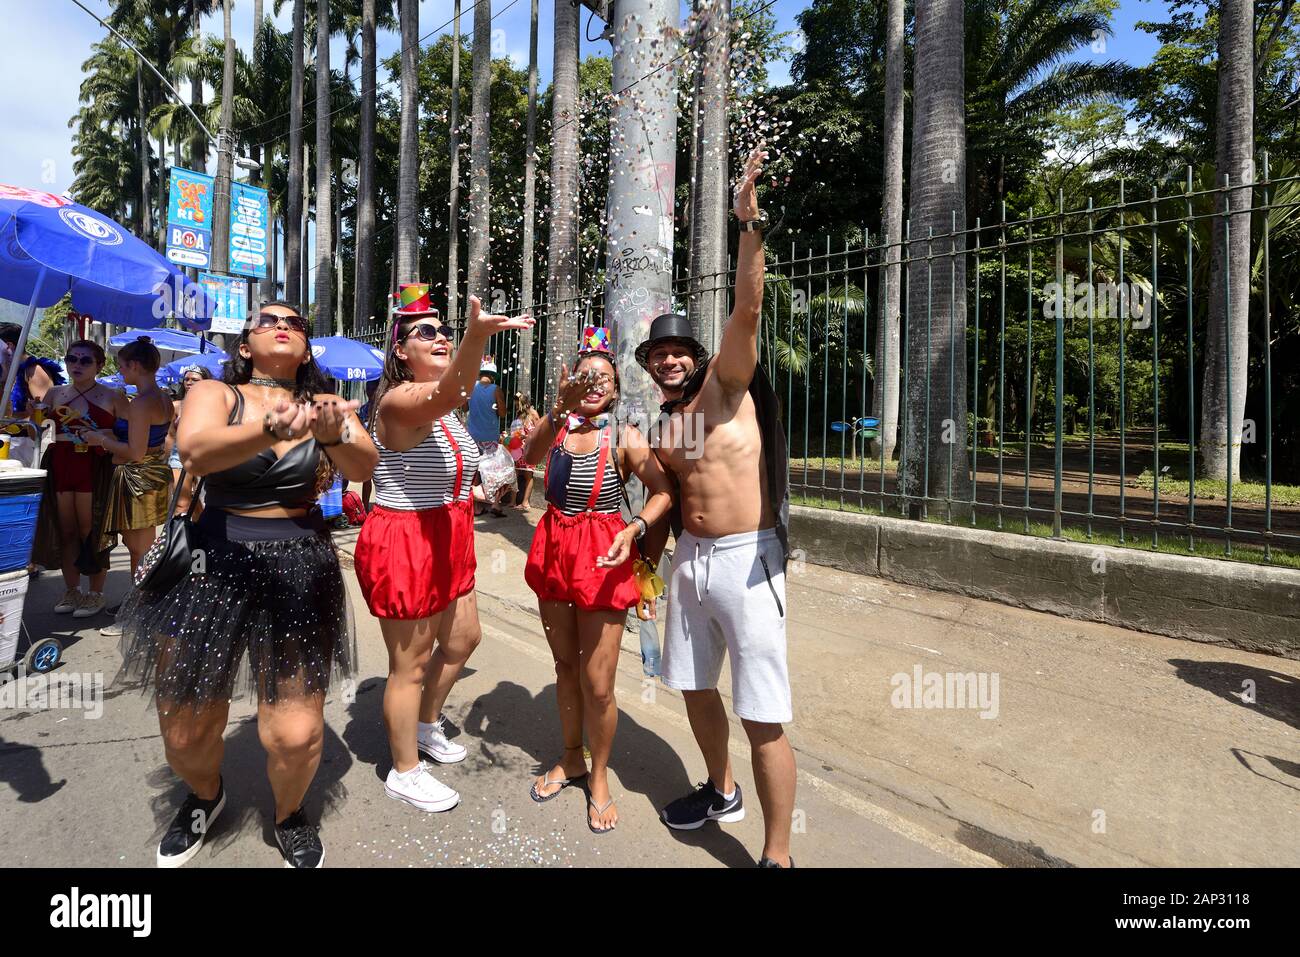 Sud America, Brasile - 5 Marzo 2019: amici godere il carnevale di strada lanciando coriandoli durante una parata tenutasi a Rio de Janeiro la zona sud. Foto Stock